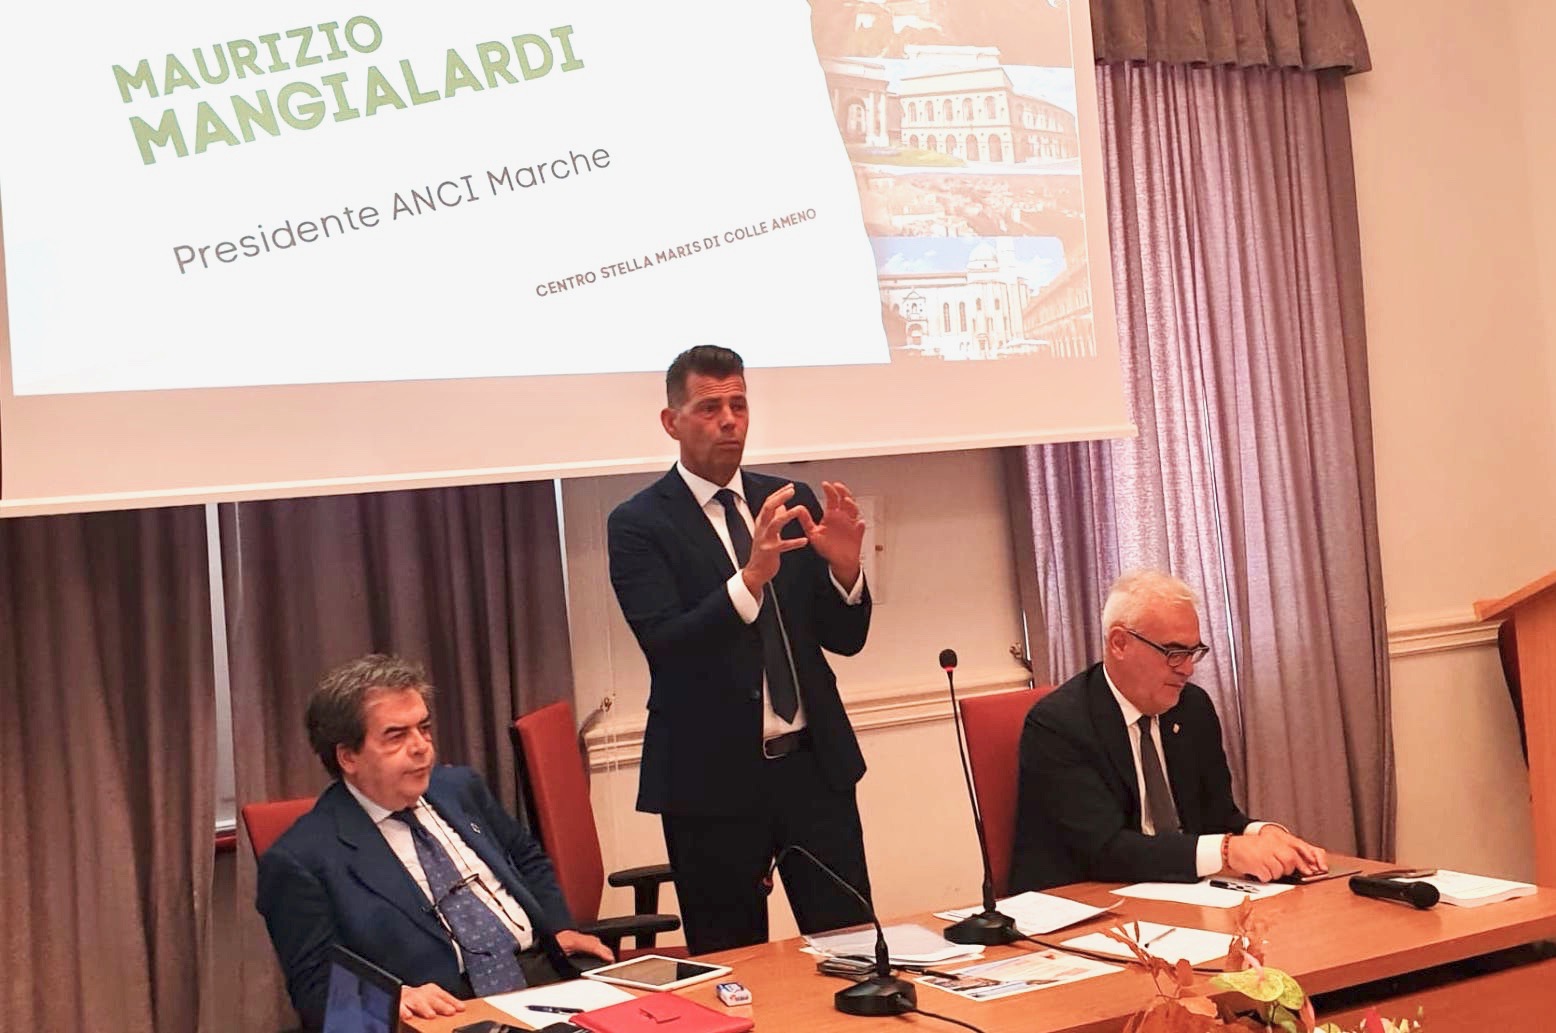 Eletti i 18 delegati di Anci Marche che parteciperanno all’assemblea congressuale di Arezzo